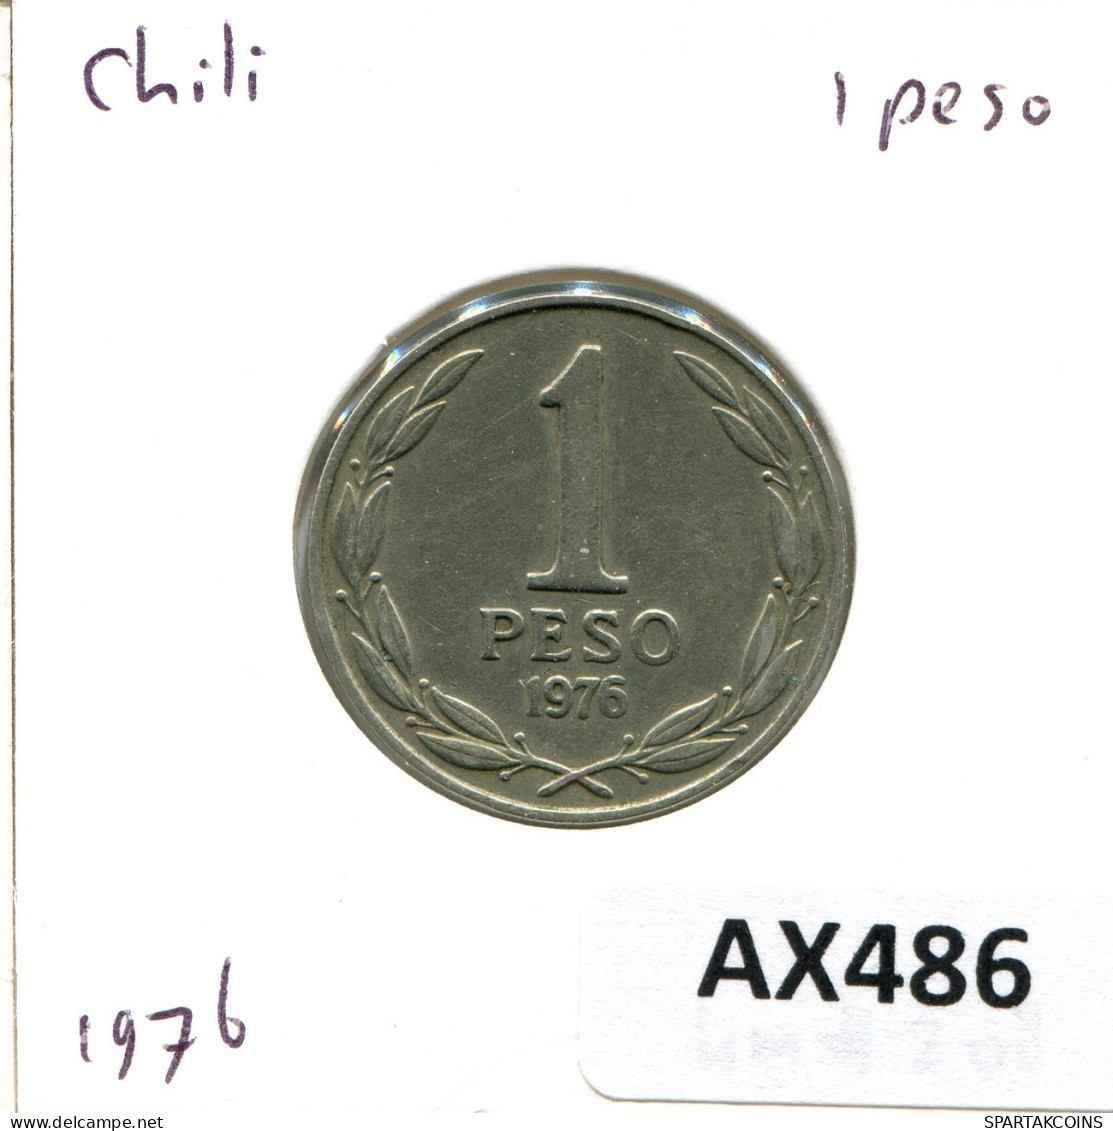 1 PESO 1976 CHILE Coin #AX486.U.A - Chile